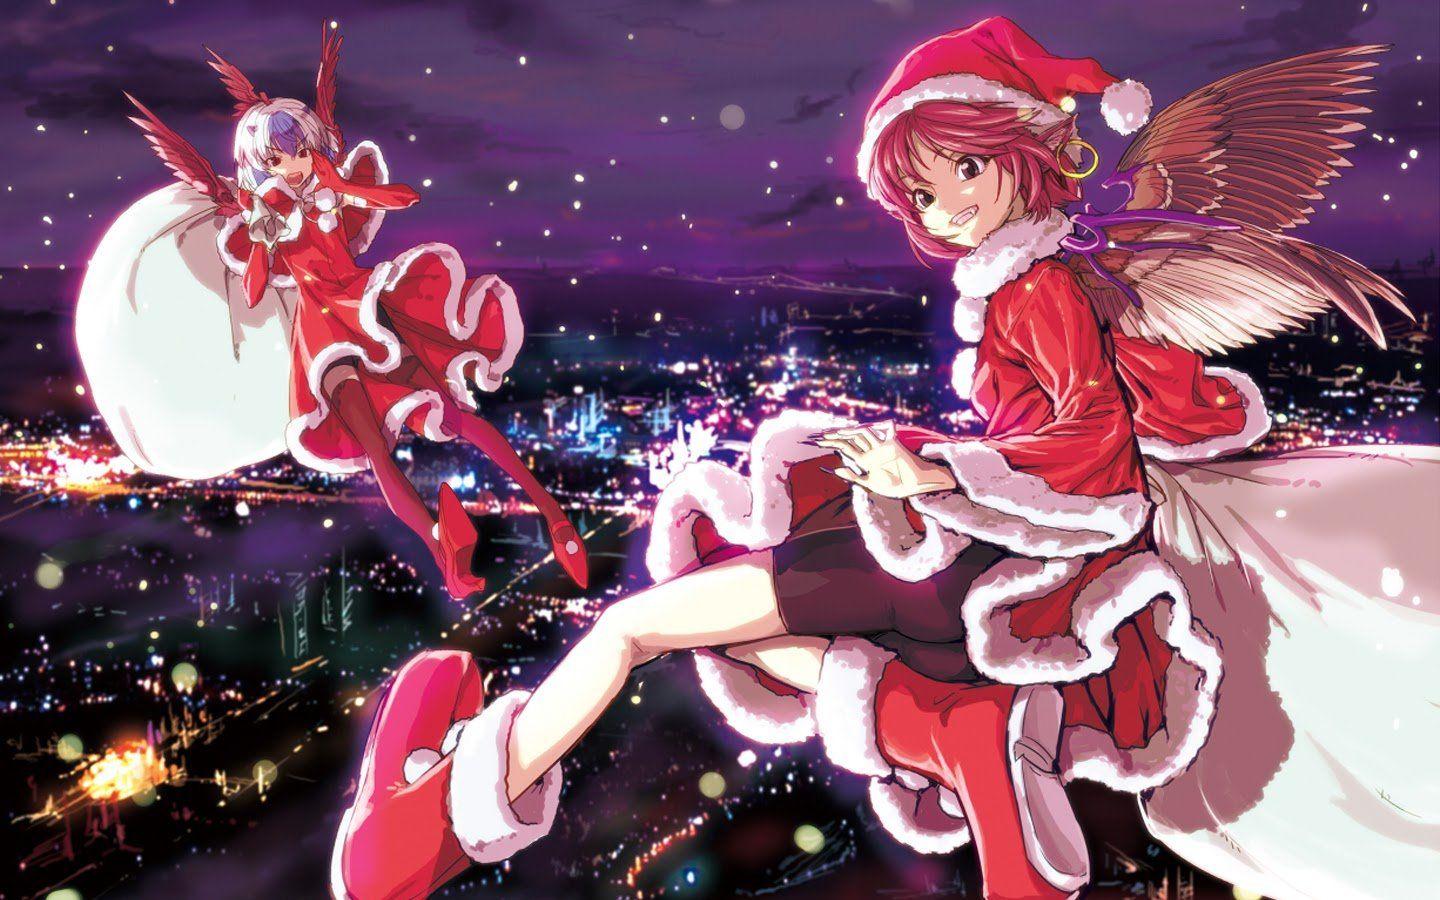 Màn hình điện thoại của bạn chưa đủ hoành tráng cho mùa Giáng Sinh năm nay? Hãy tải Anime Girl Christmas Wallpapers để trang trí thêm cho phù hợp nhé! Bức hình liên quan đầy ấn tượng và tuyệt đẹp.